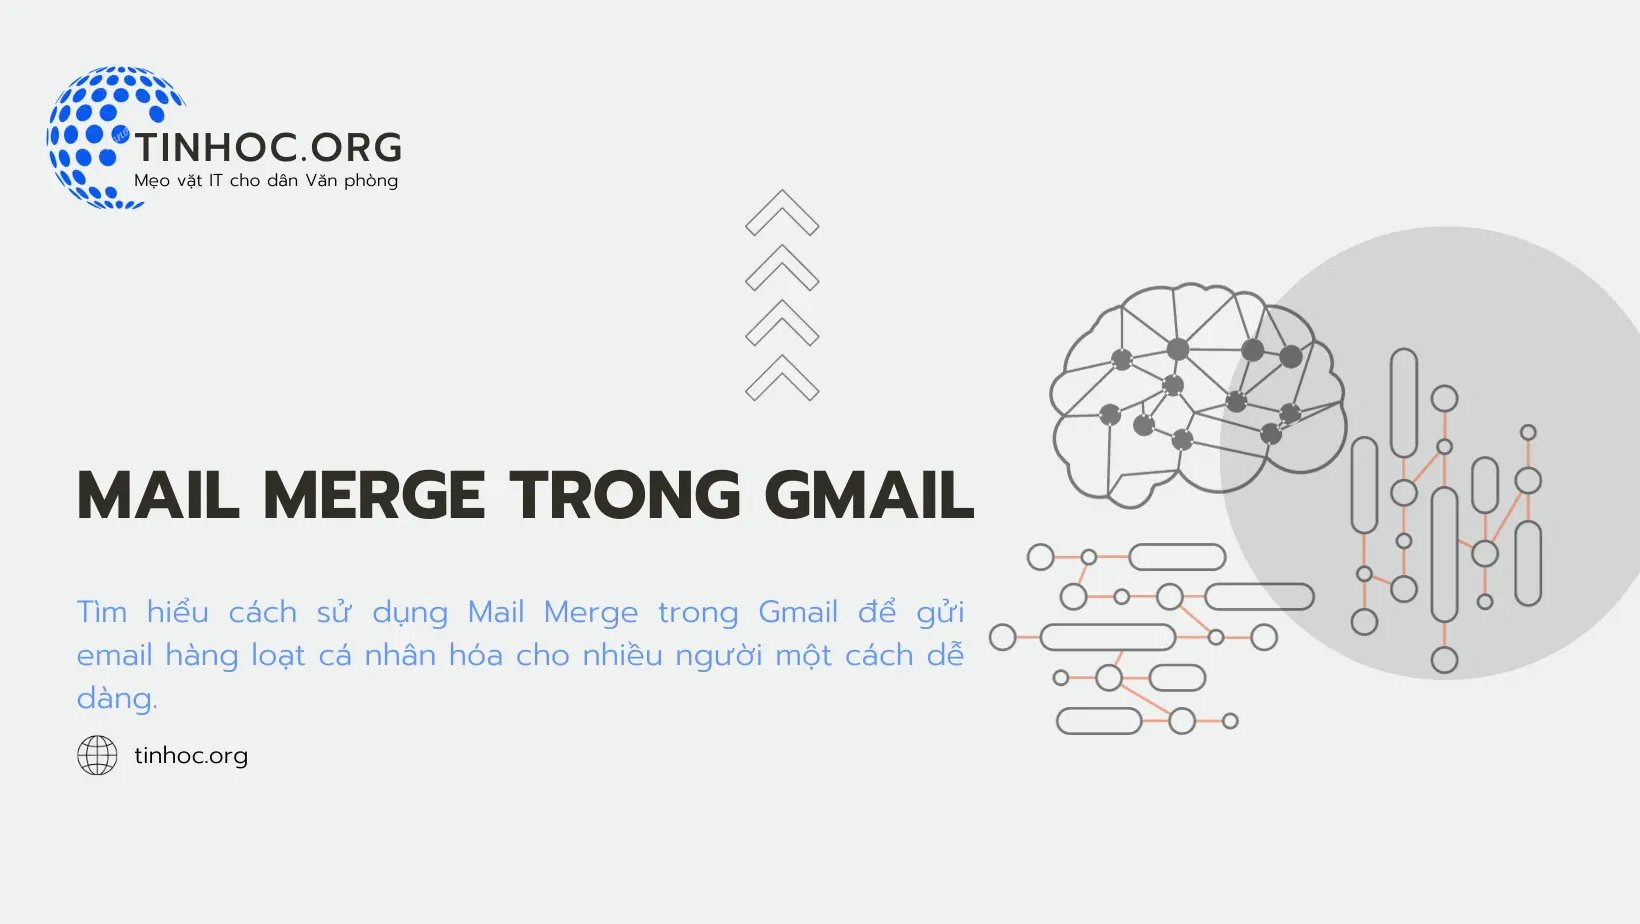 Sử dụng Mail Merge trong Gmail để gửi email hàng loạt